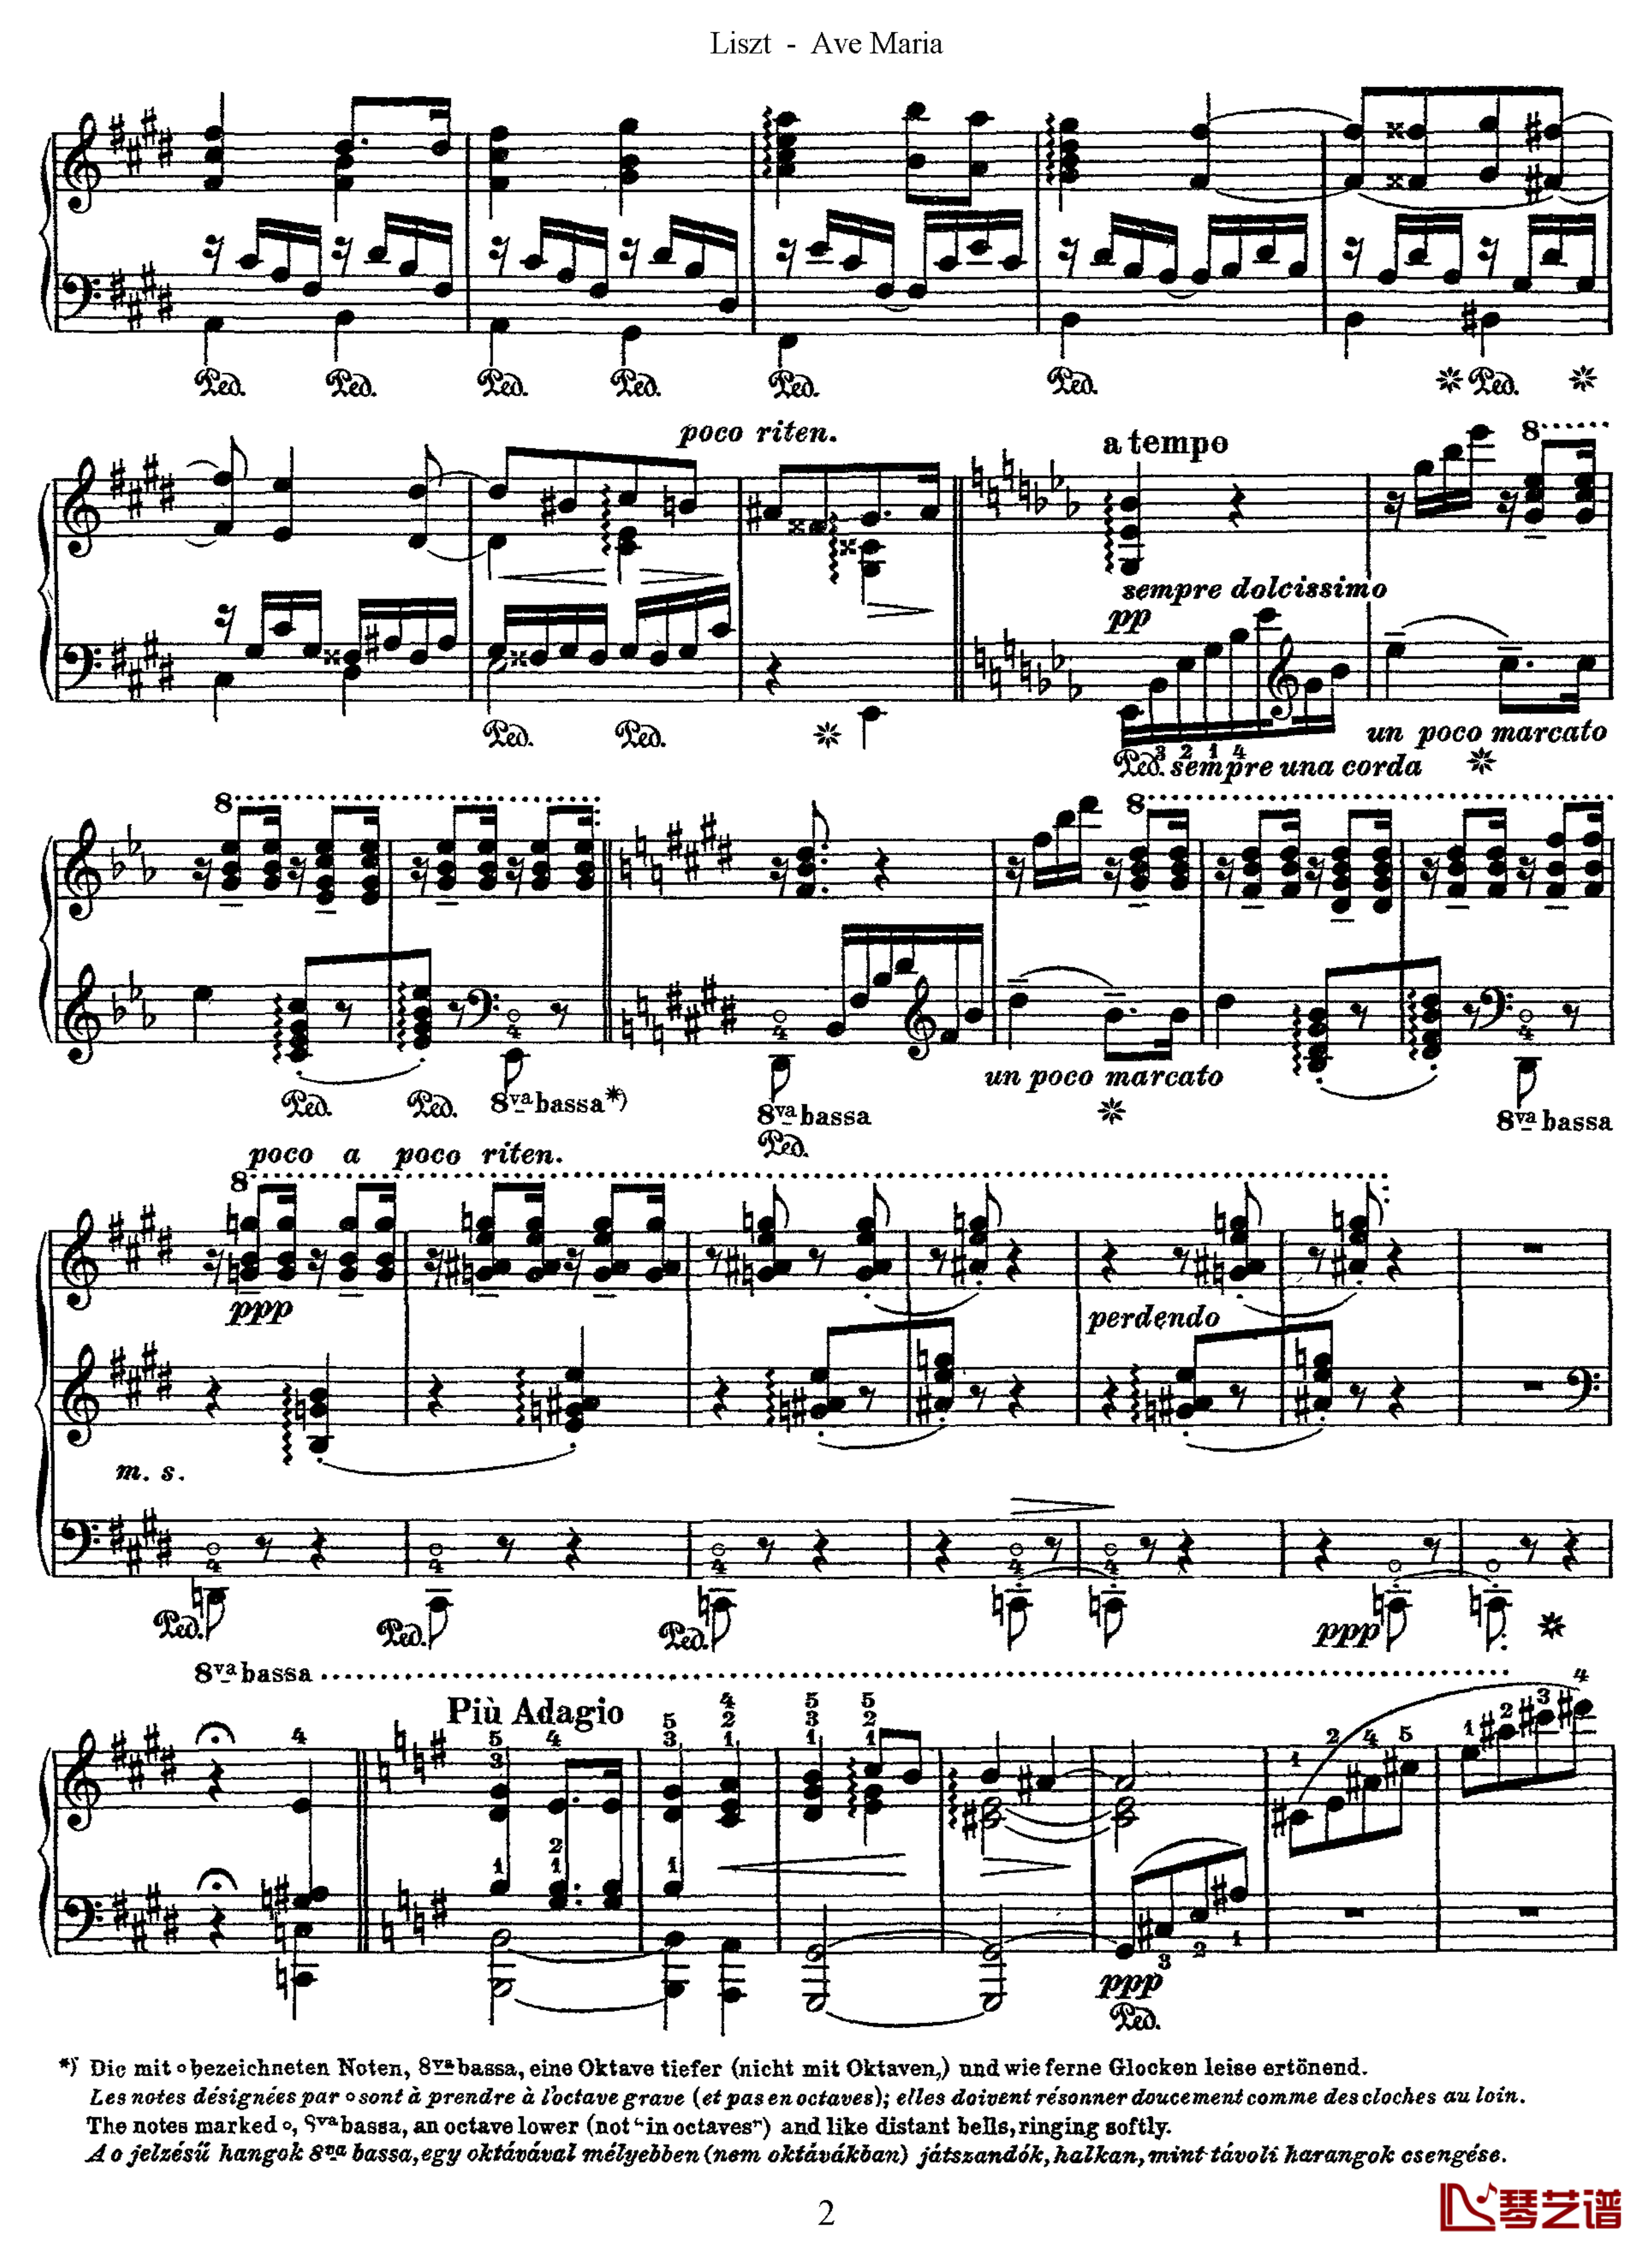 罗马的钟声S.182钢琴谱-李斯特2